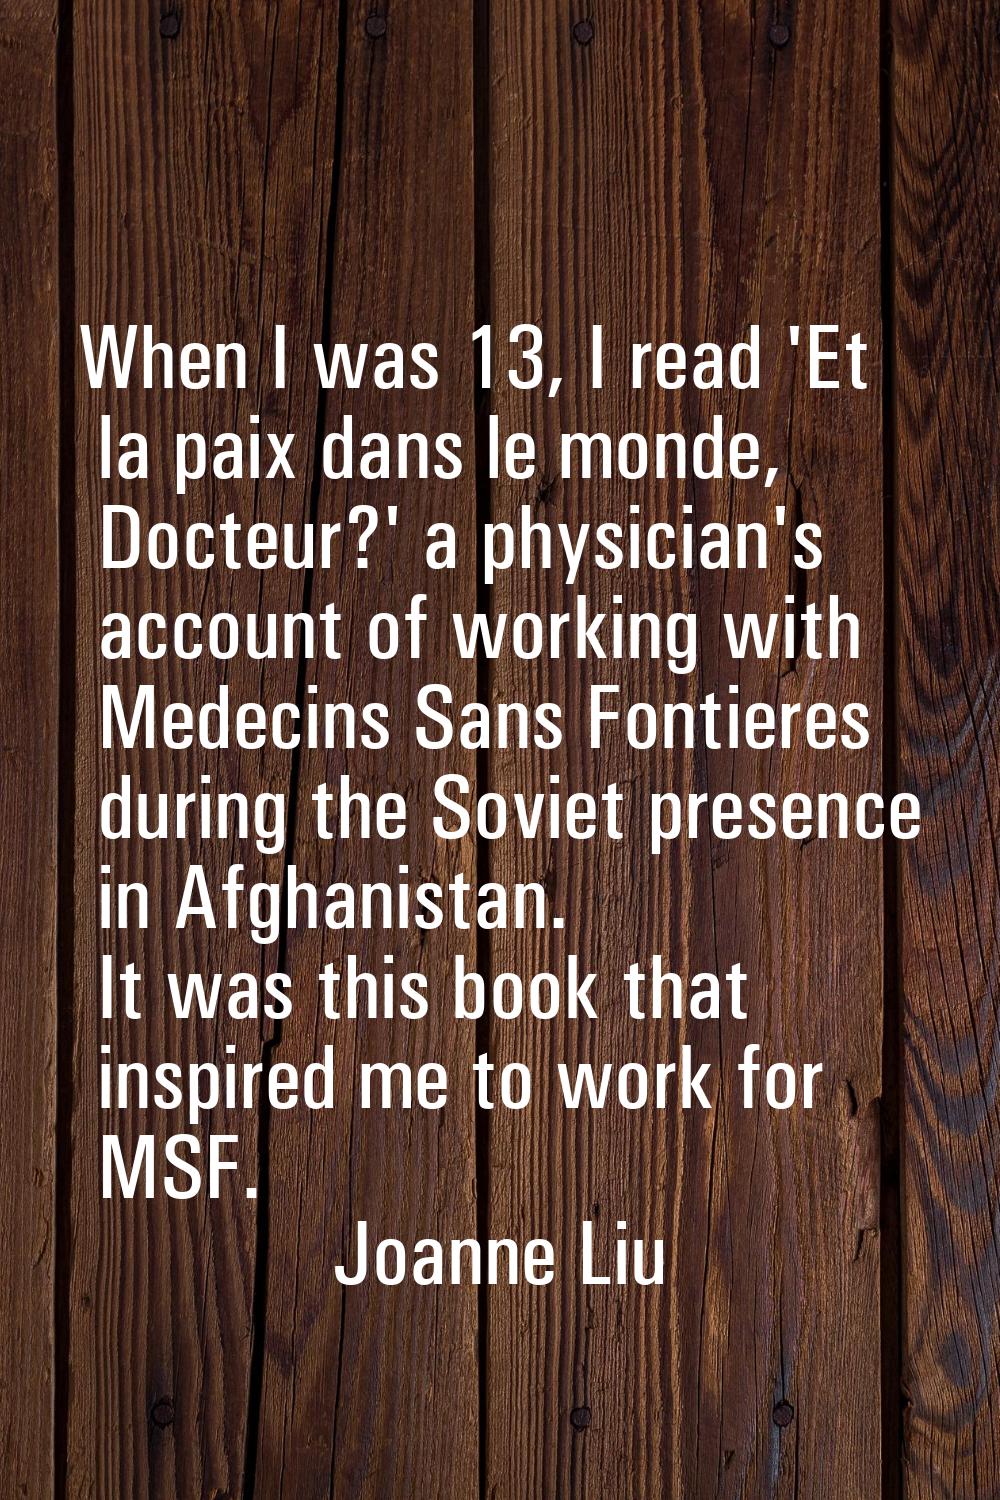 When I was 13, I read 'Et la paix dans le monde, Docteur?' a physician's account of working with Me